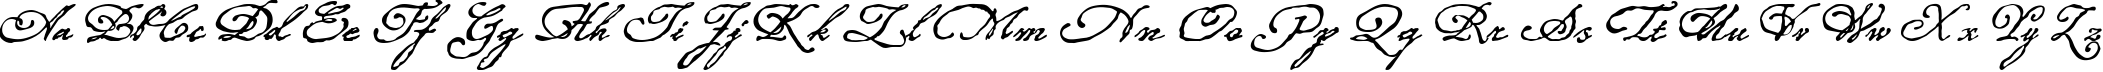 Пример написания английского алфавита шрифтом Roanoke Script